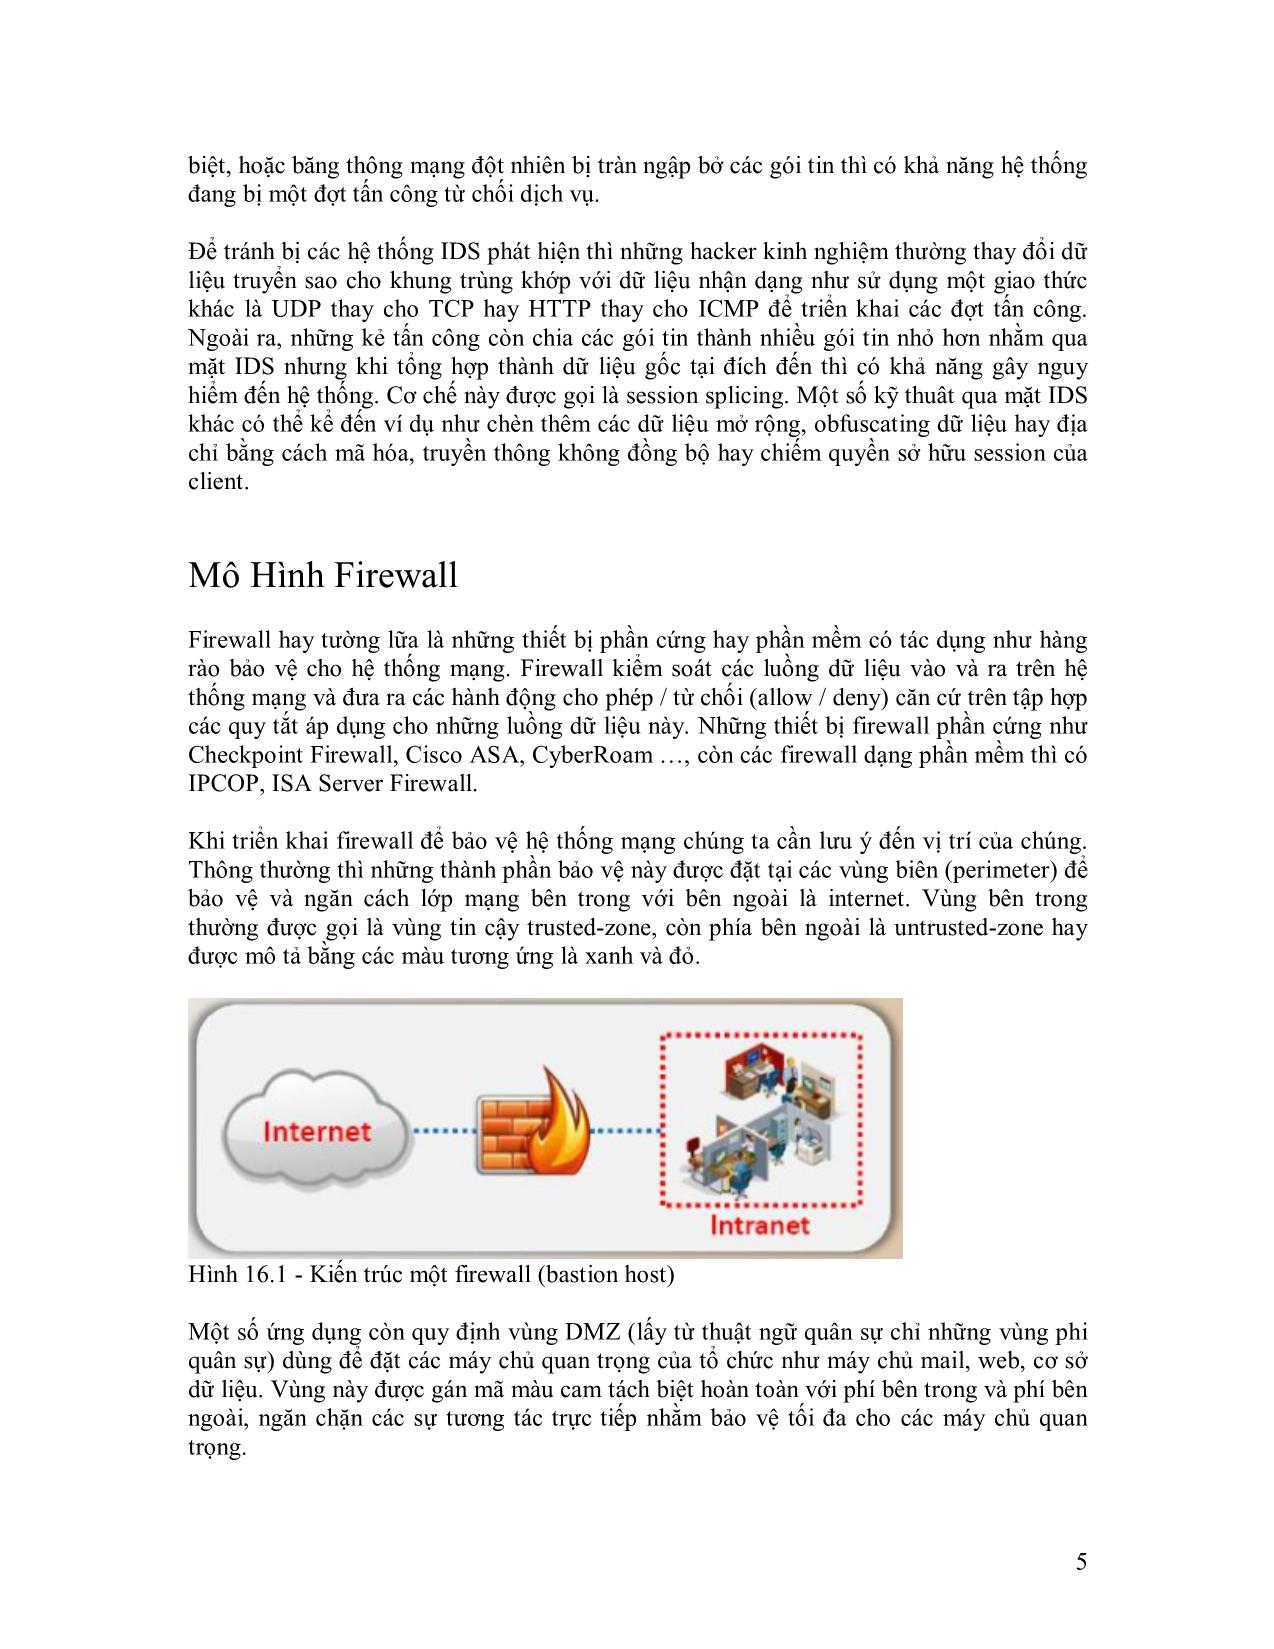 Module 16: Chống IDS, Firewall và Honeypot trang 5